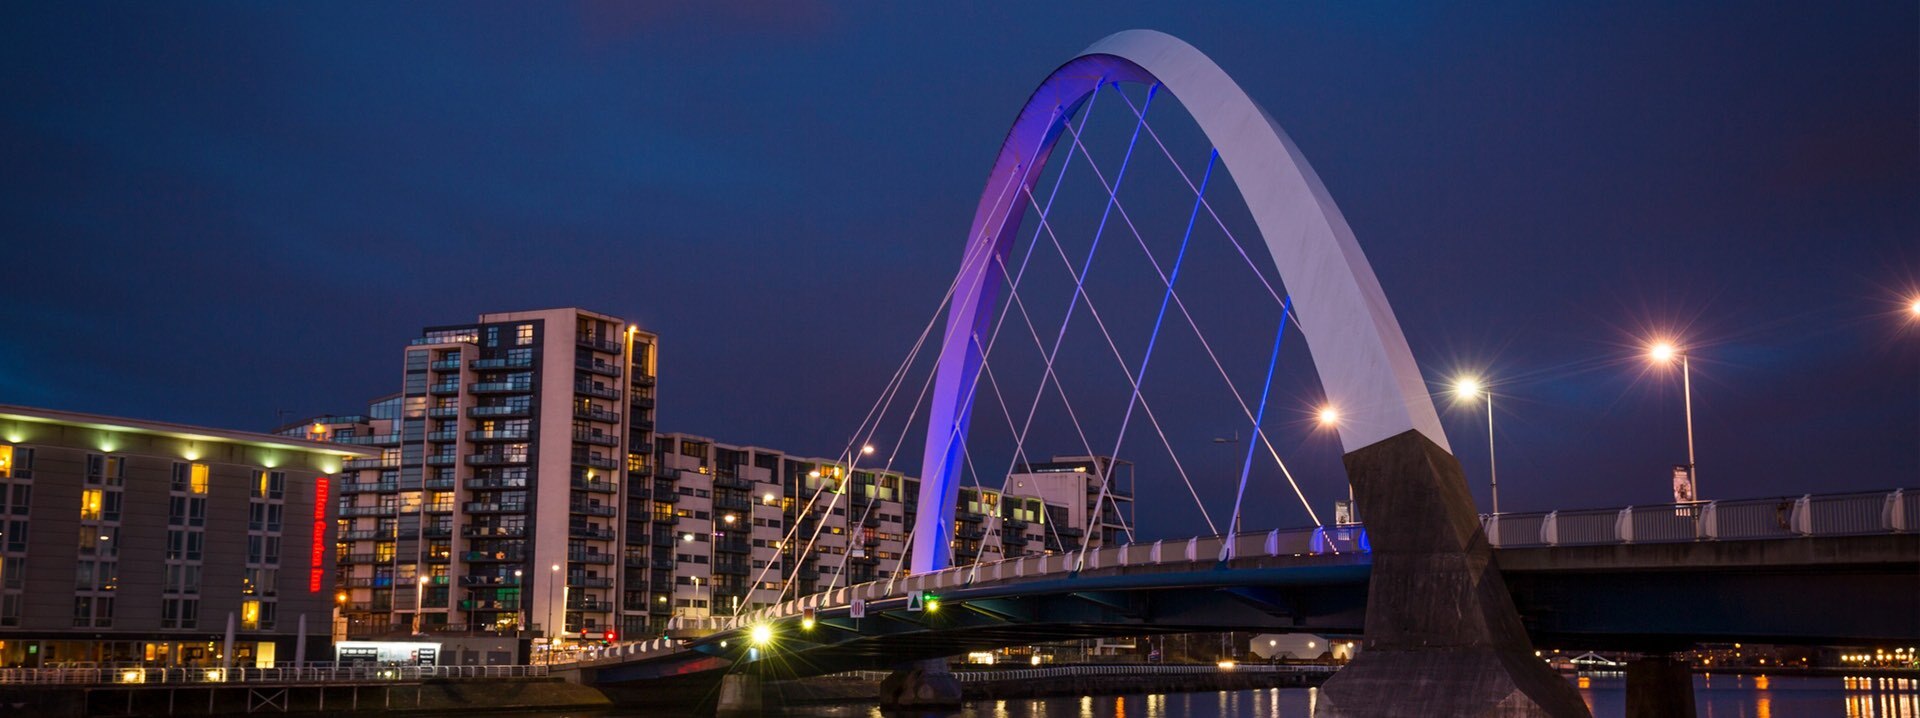 Die beleuchtete Clyde-Arc-Brücke und Gebäude bei Nacht.